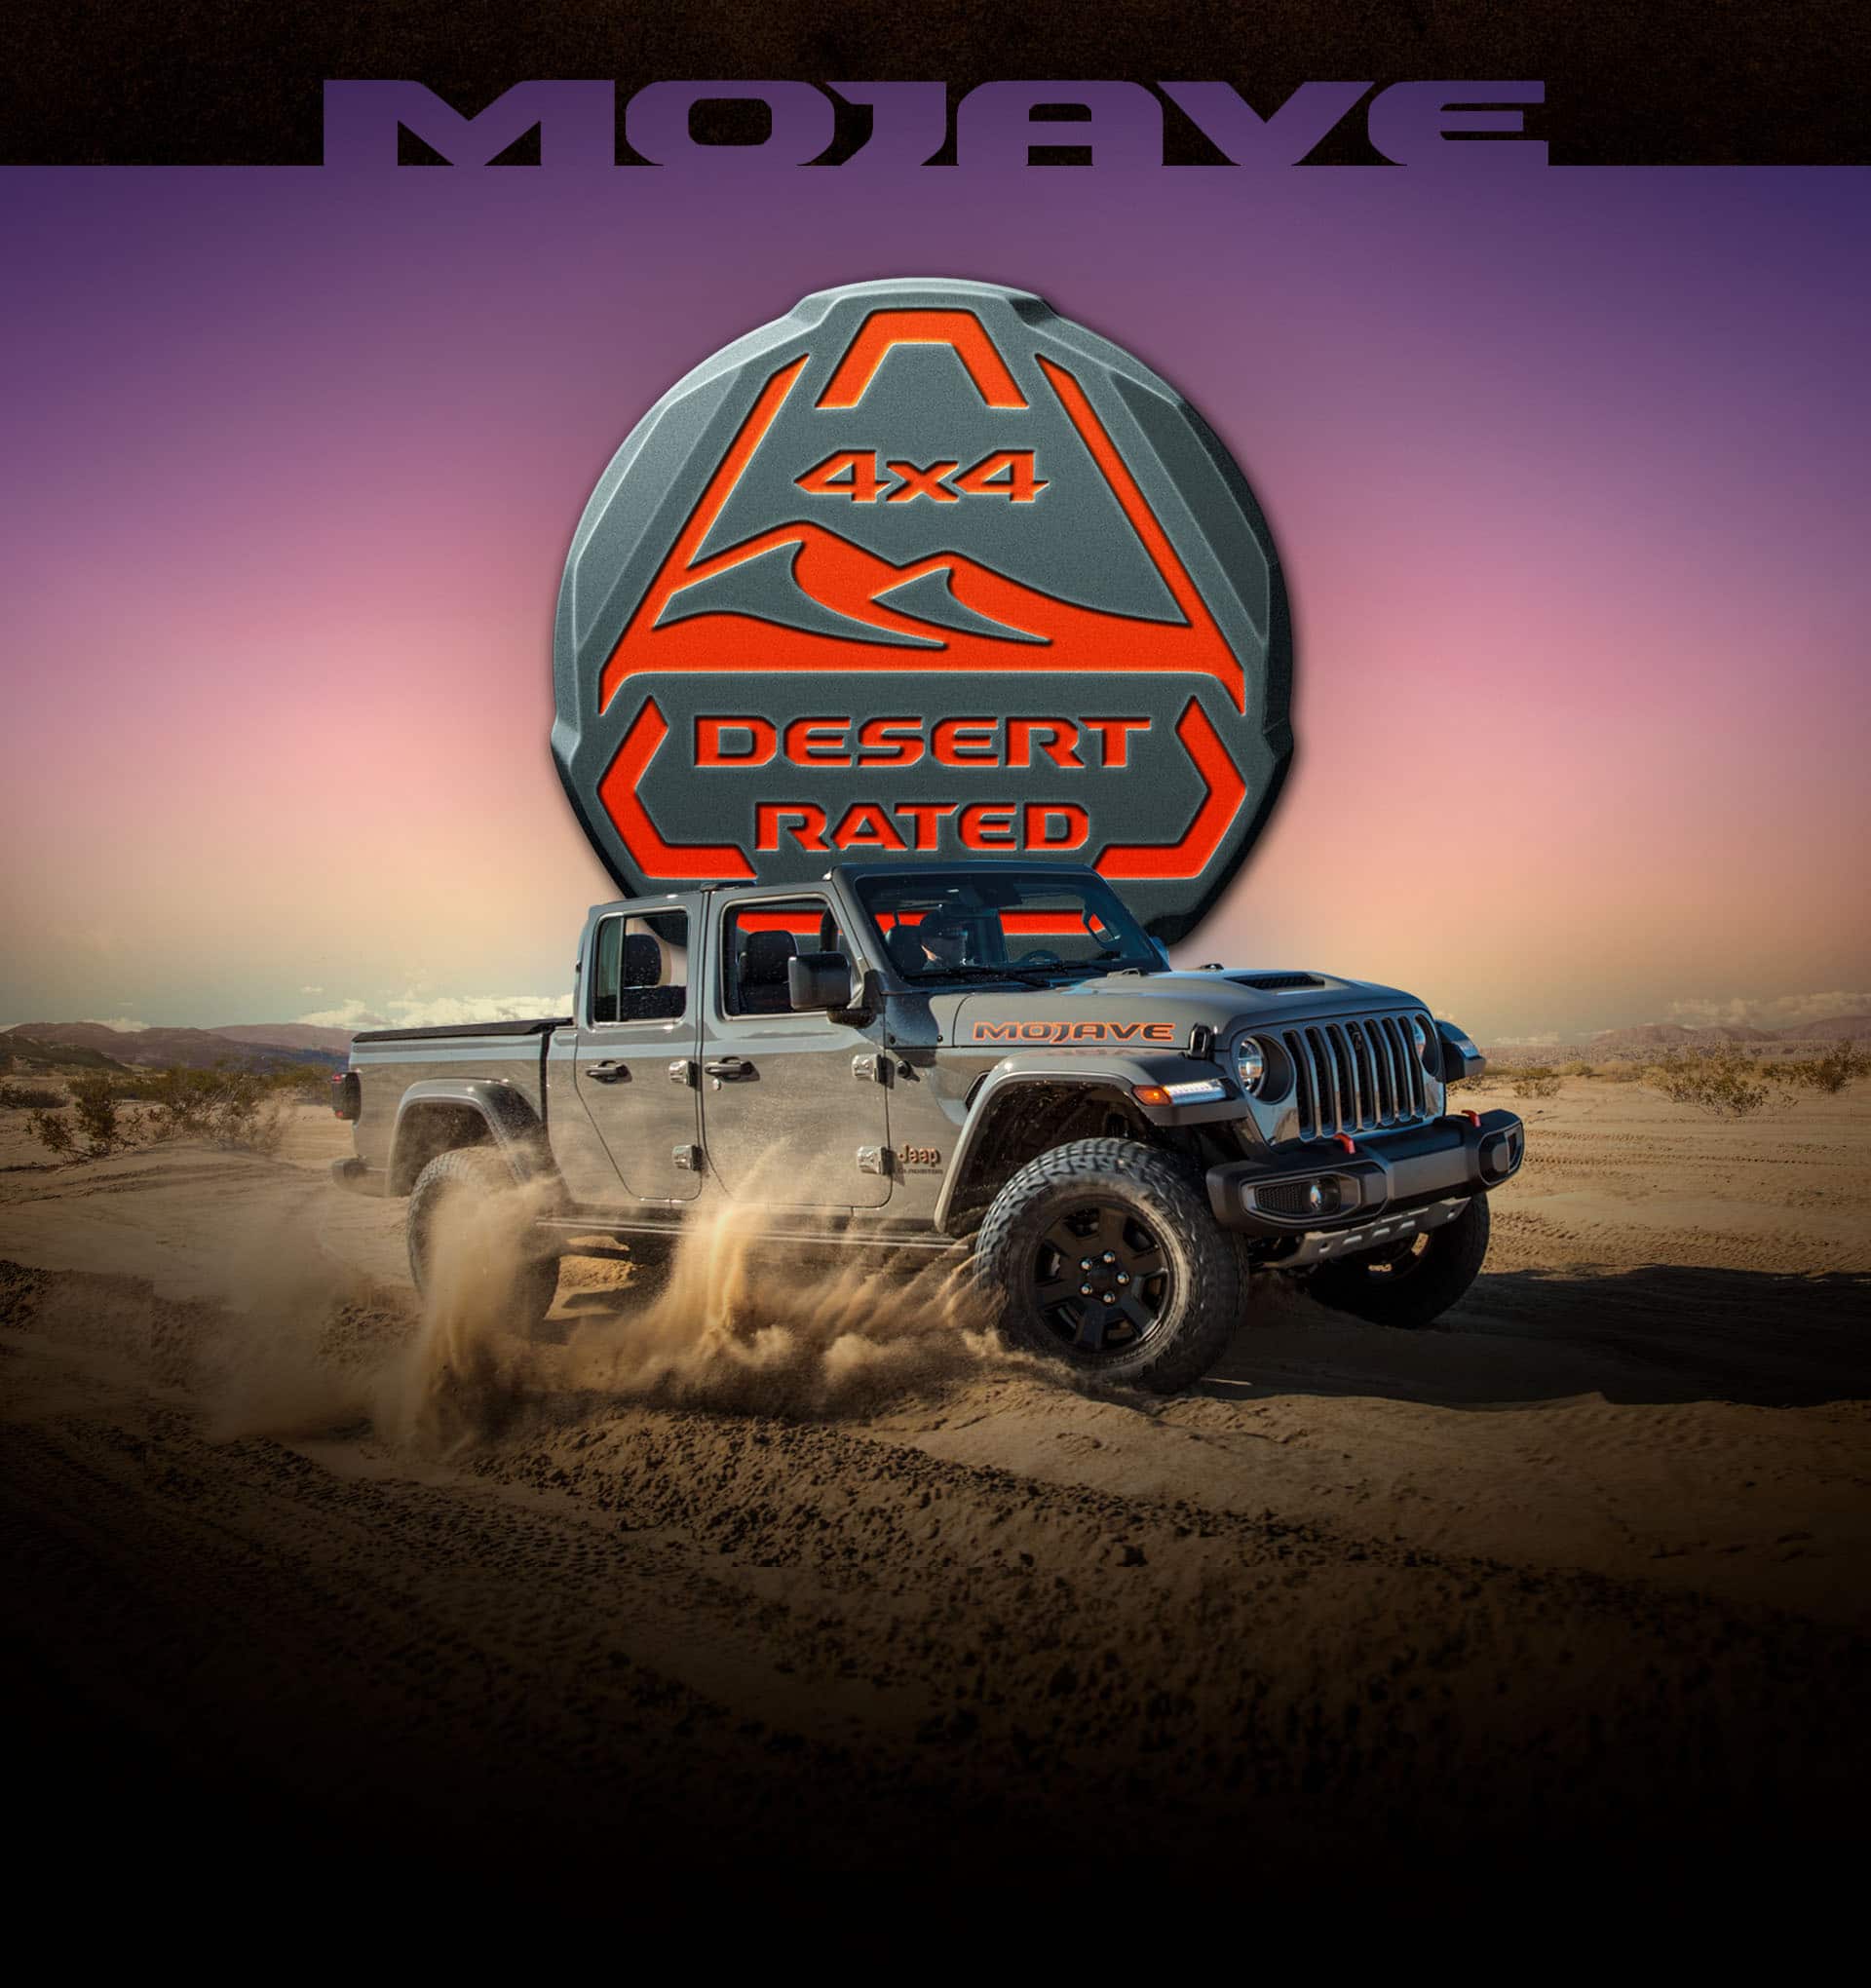 Mojave. La Jeep Gladiator Mojave 2022 conducida sobre arena en el desierto, con el logotipo Calificado para Andar por el Desierto 4x4 superpuesto.